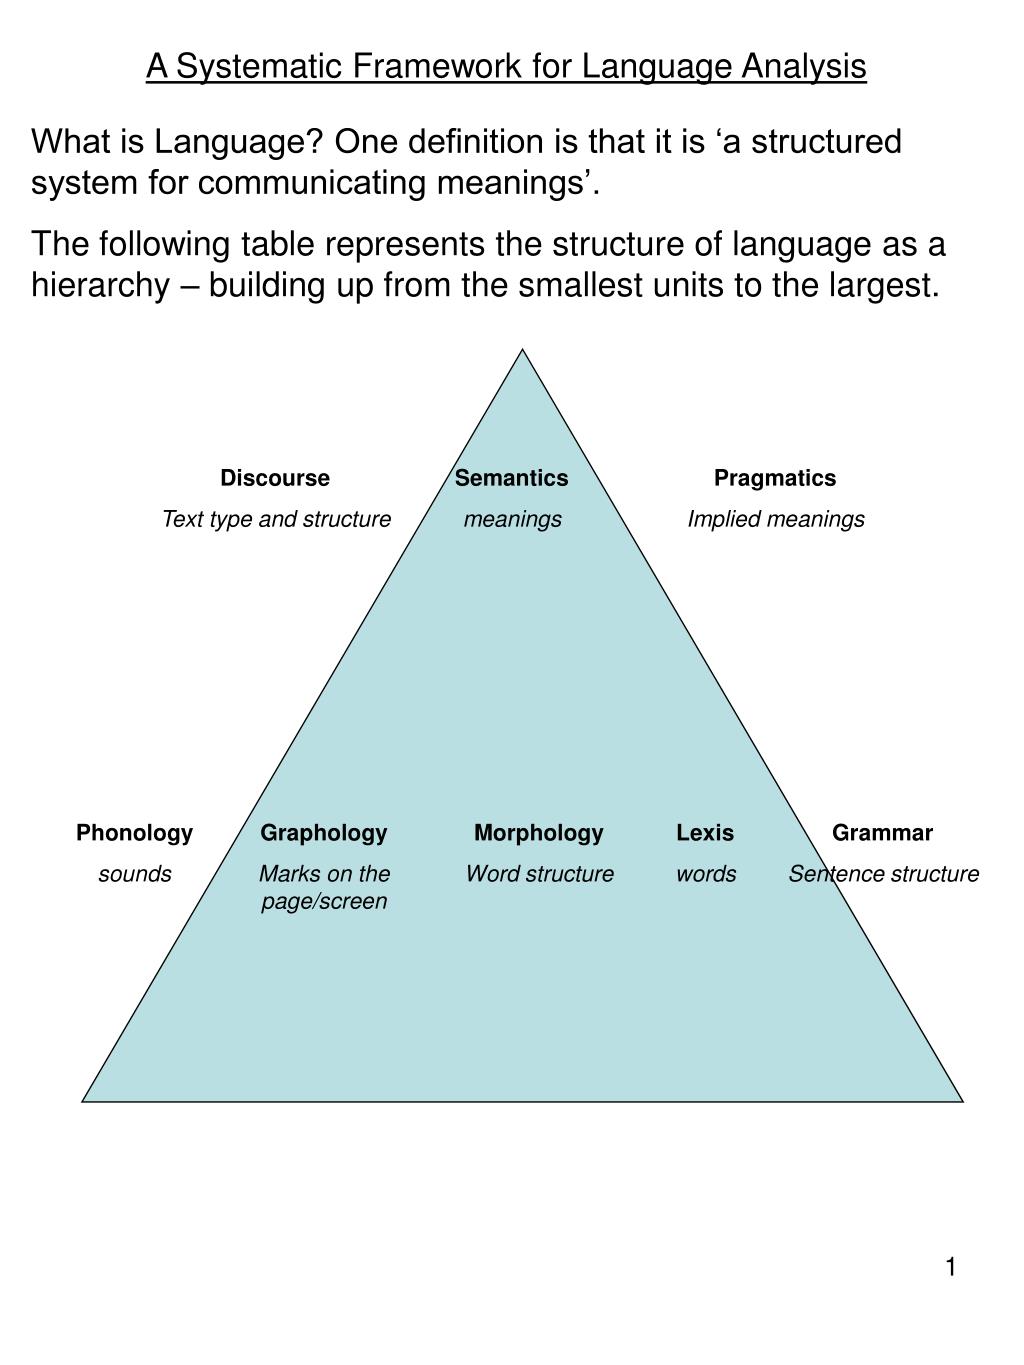 research analysis language